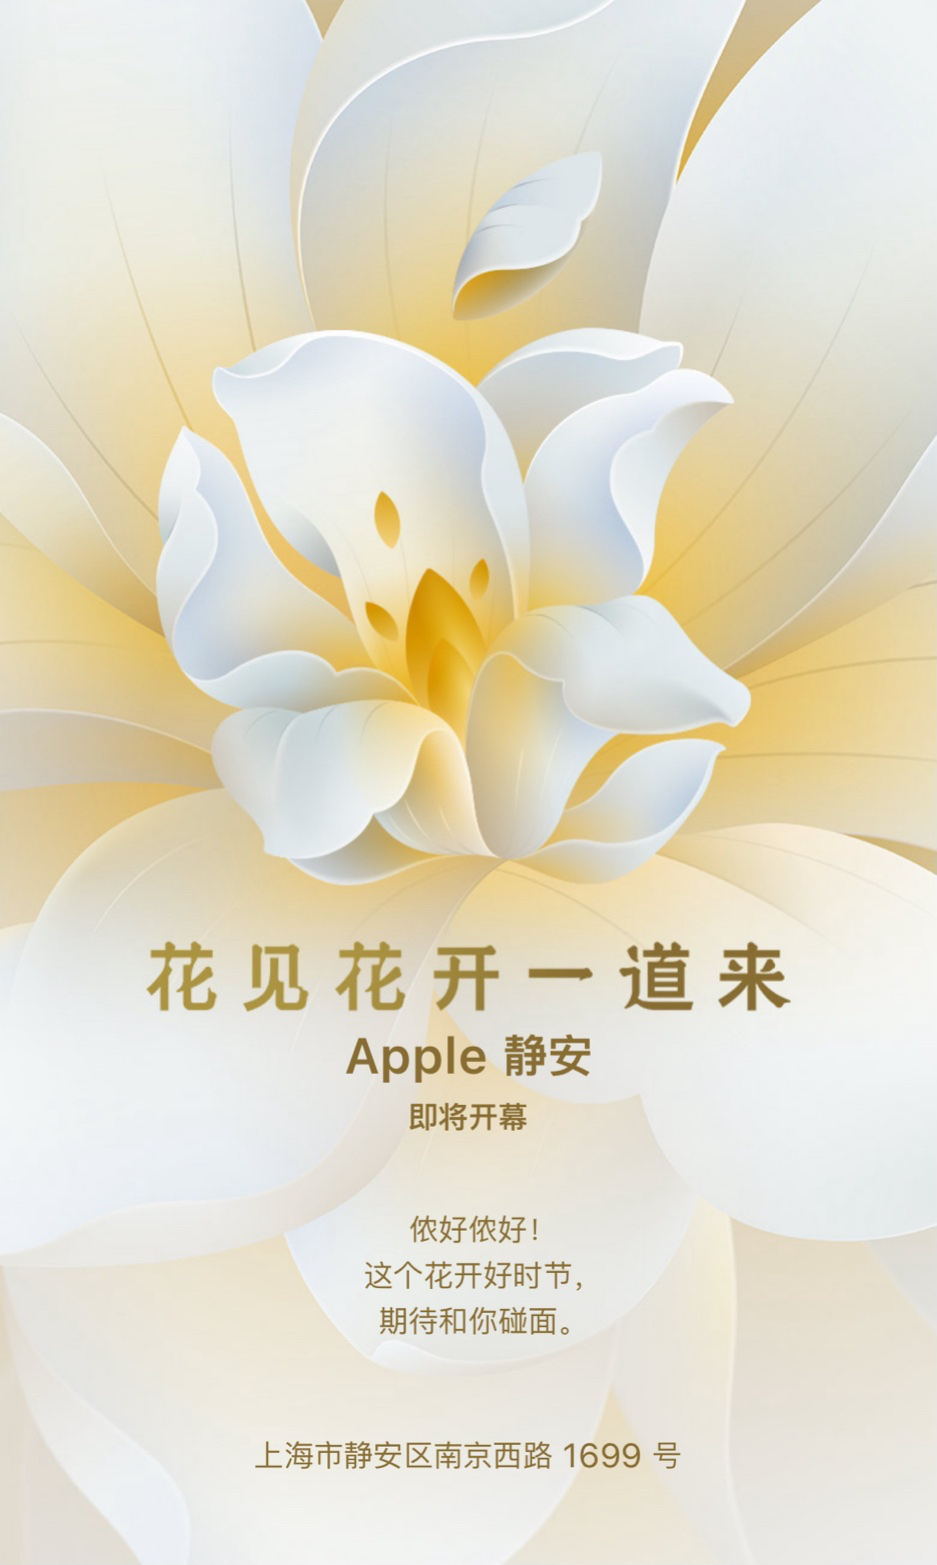 花见花开一道来：苹果上海第八家直营店“Apple 静安店”即将开幕.jpg